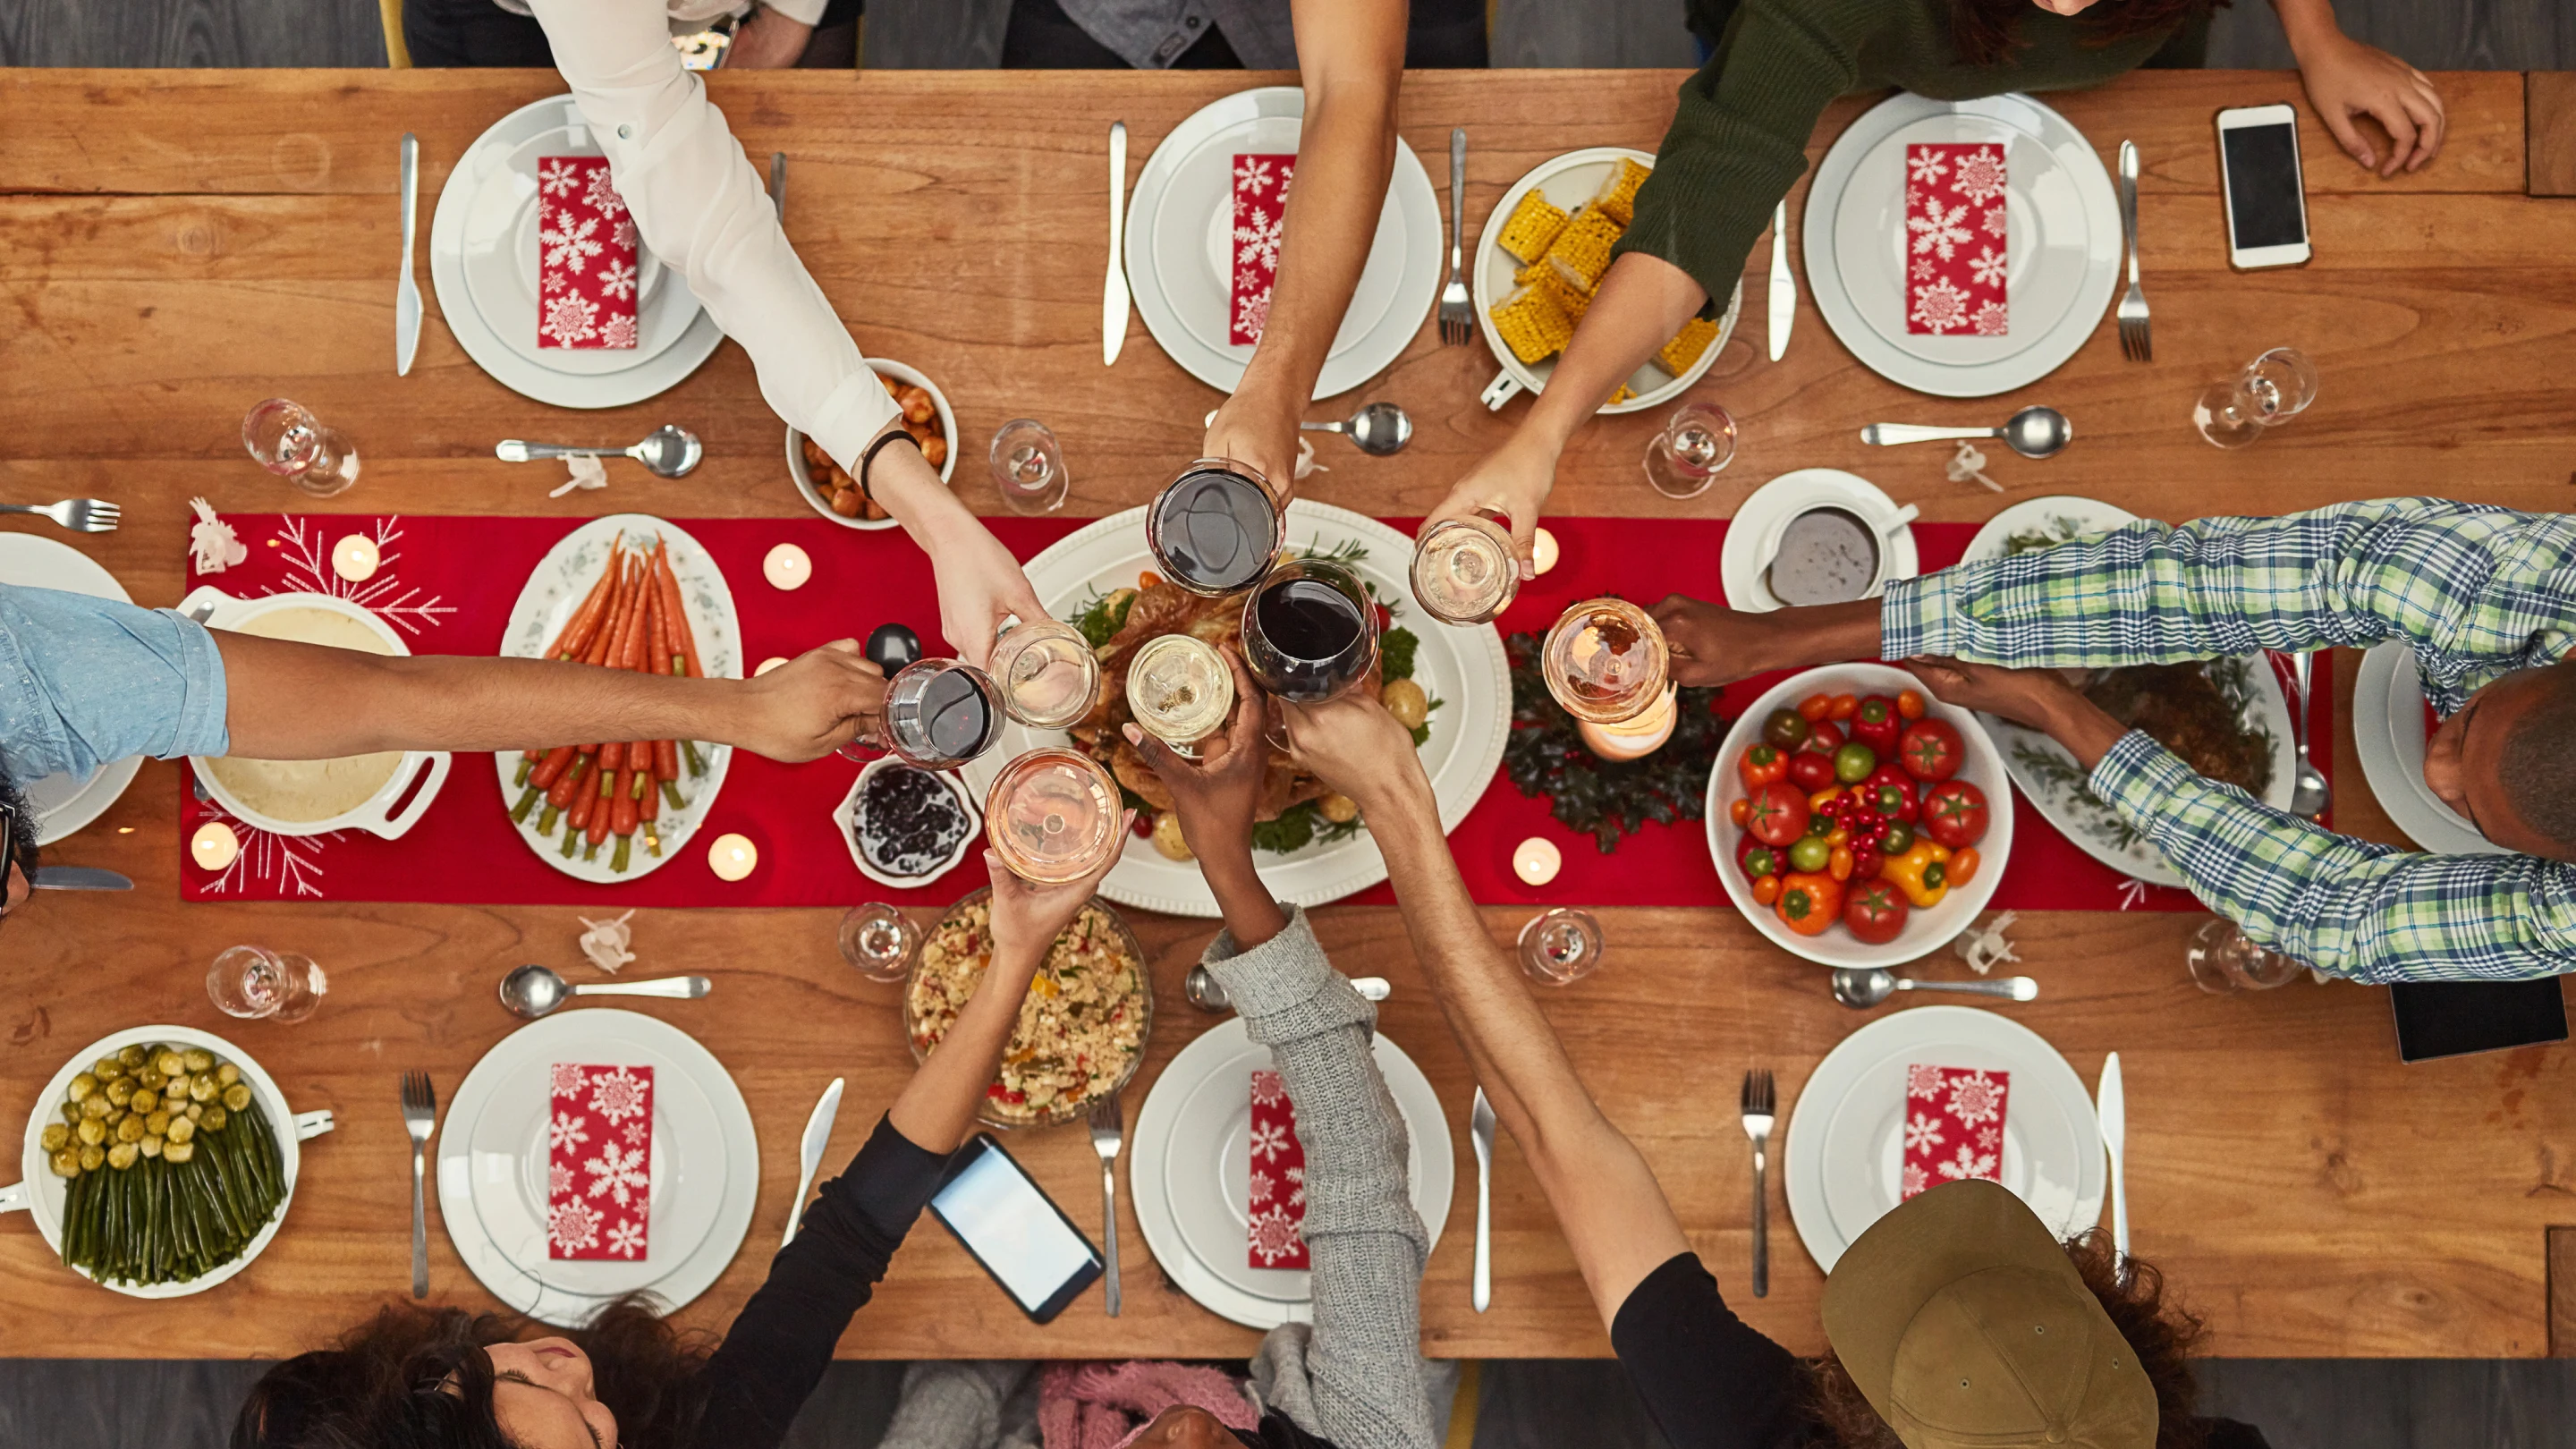 Bild von einem Tisch, an dem Menschen sitzen, die gemeinsam essen werden. Der Tisch ist aus Holz und mit einem schmalem roten Tischtuch in der Mitte bedeckt. Am Tisch sitzen sieben Menschen, und alle stoßen mit ihrem Getränk an, das sie in die Mitte halten. Auf dem Tisch befinden sich mehrere Teller mit Essen, darunter frische Tomaten, Maiskolben, Möhren, ein gebratenes Hähnchen und mehr. Vor jeder Person befindet sich ein Porzellanteller und Besteck – Gabel, Messer und Löffel – sowie eine rot-weiße Serviette mit Blumenmuster. 